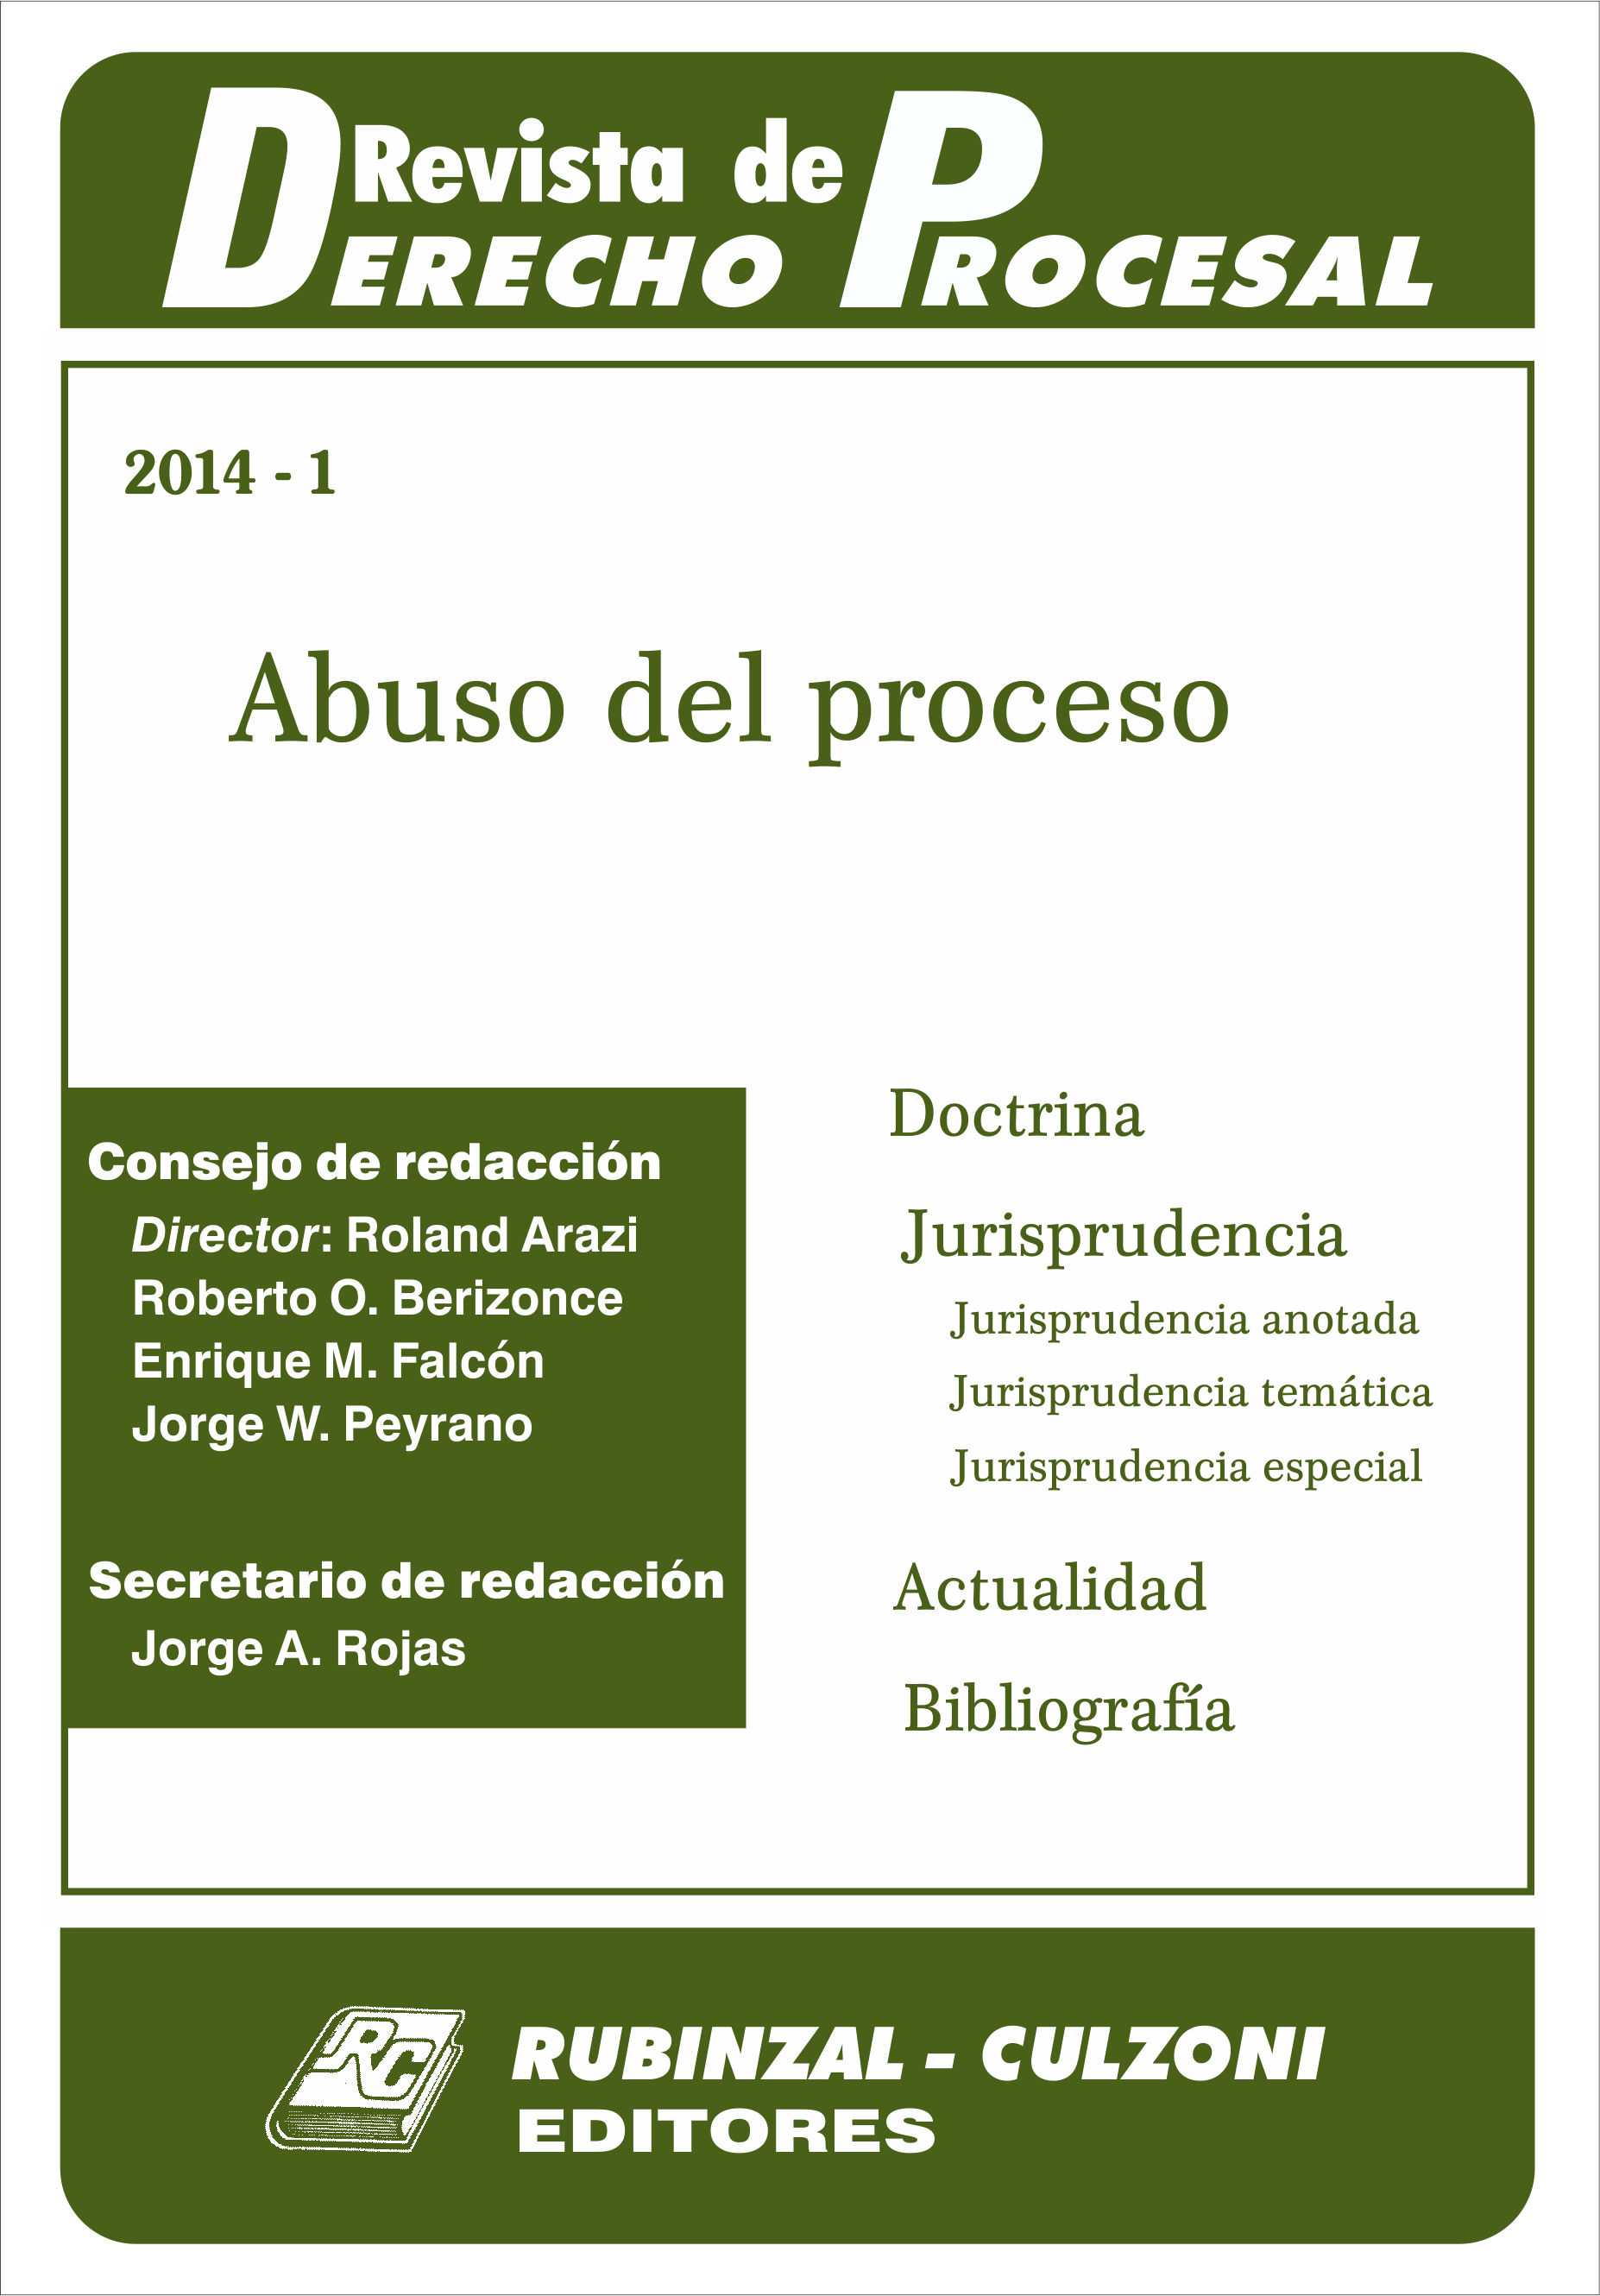 Revista de Derecho Procesal - Abuso del proceso